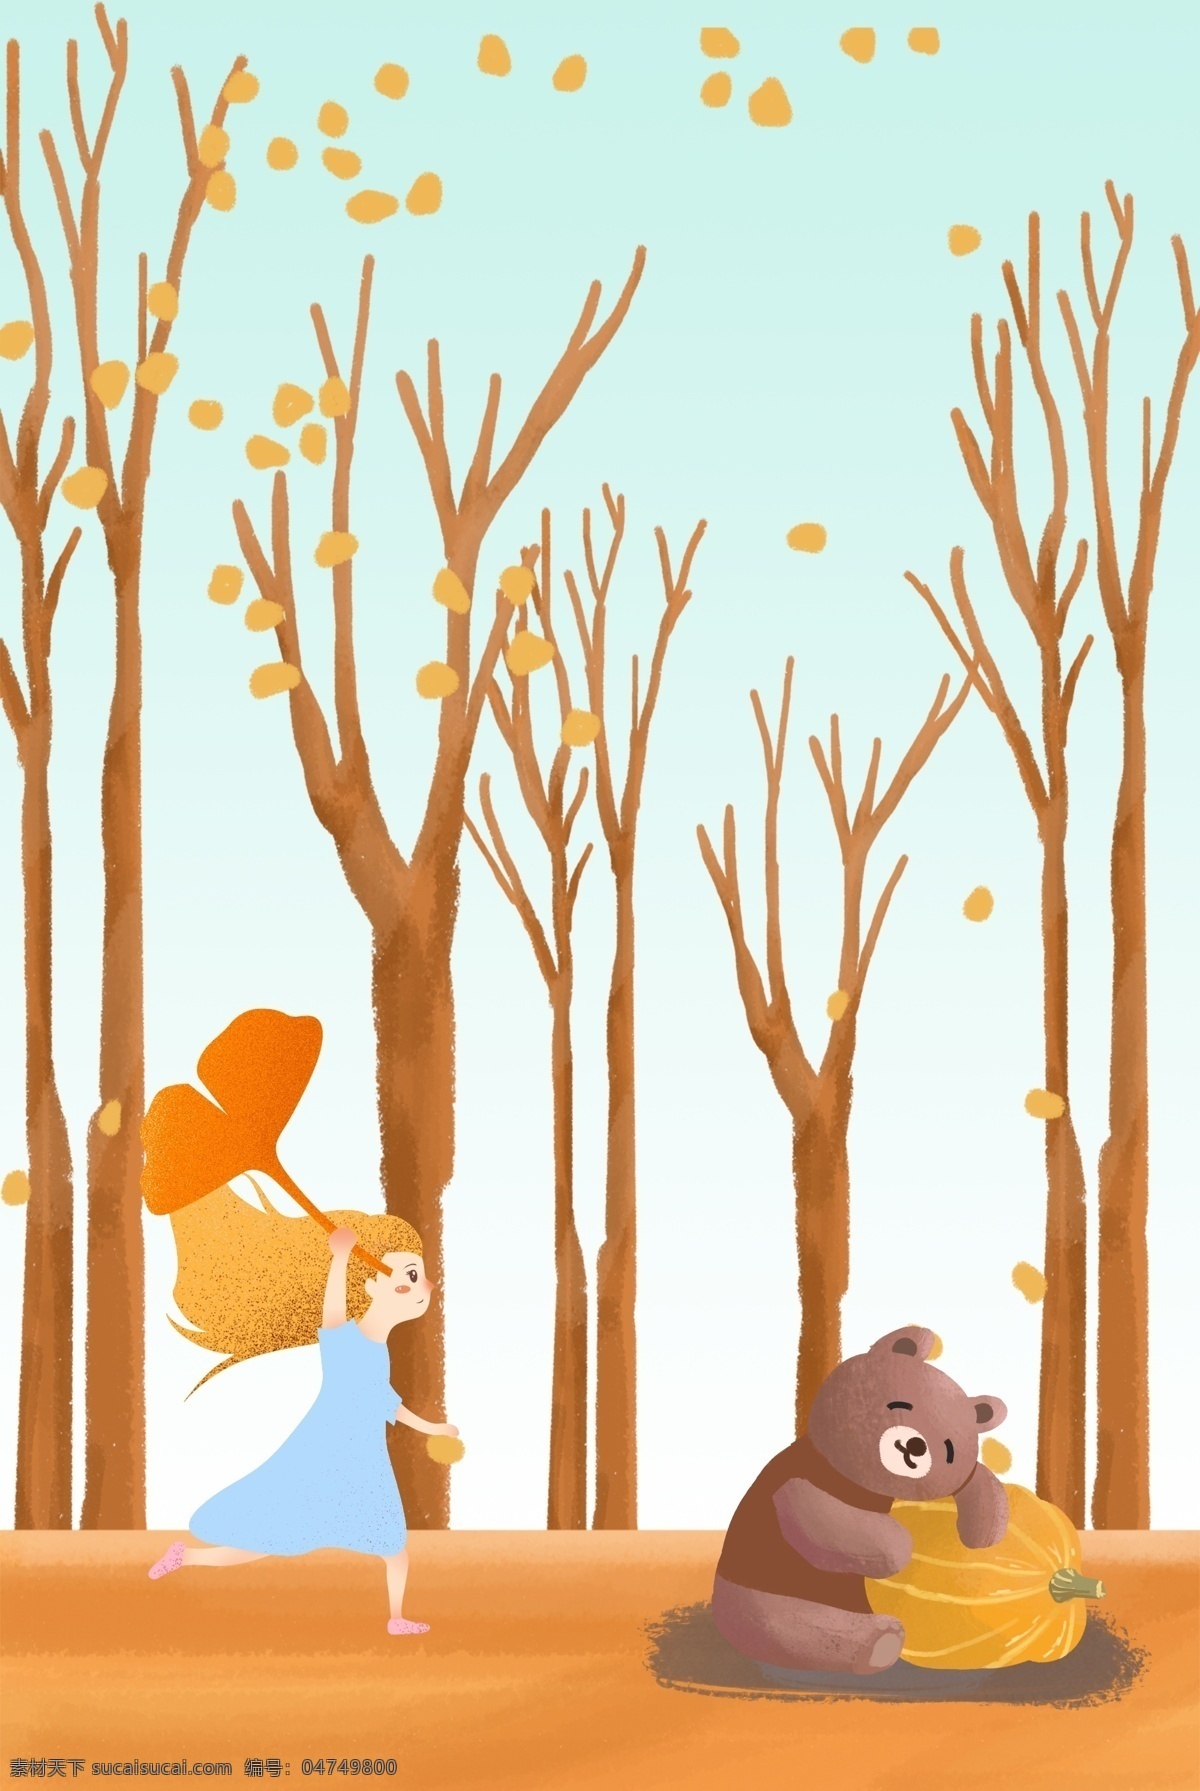 秋天你好 九月 黄色 卡通背景 海报 小女孩 熊 树林 落叶 手绘纹理 背景下载